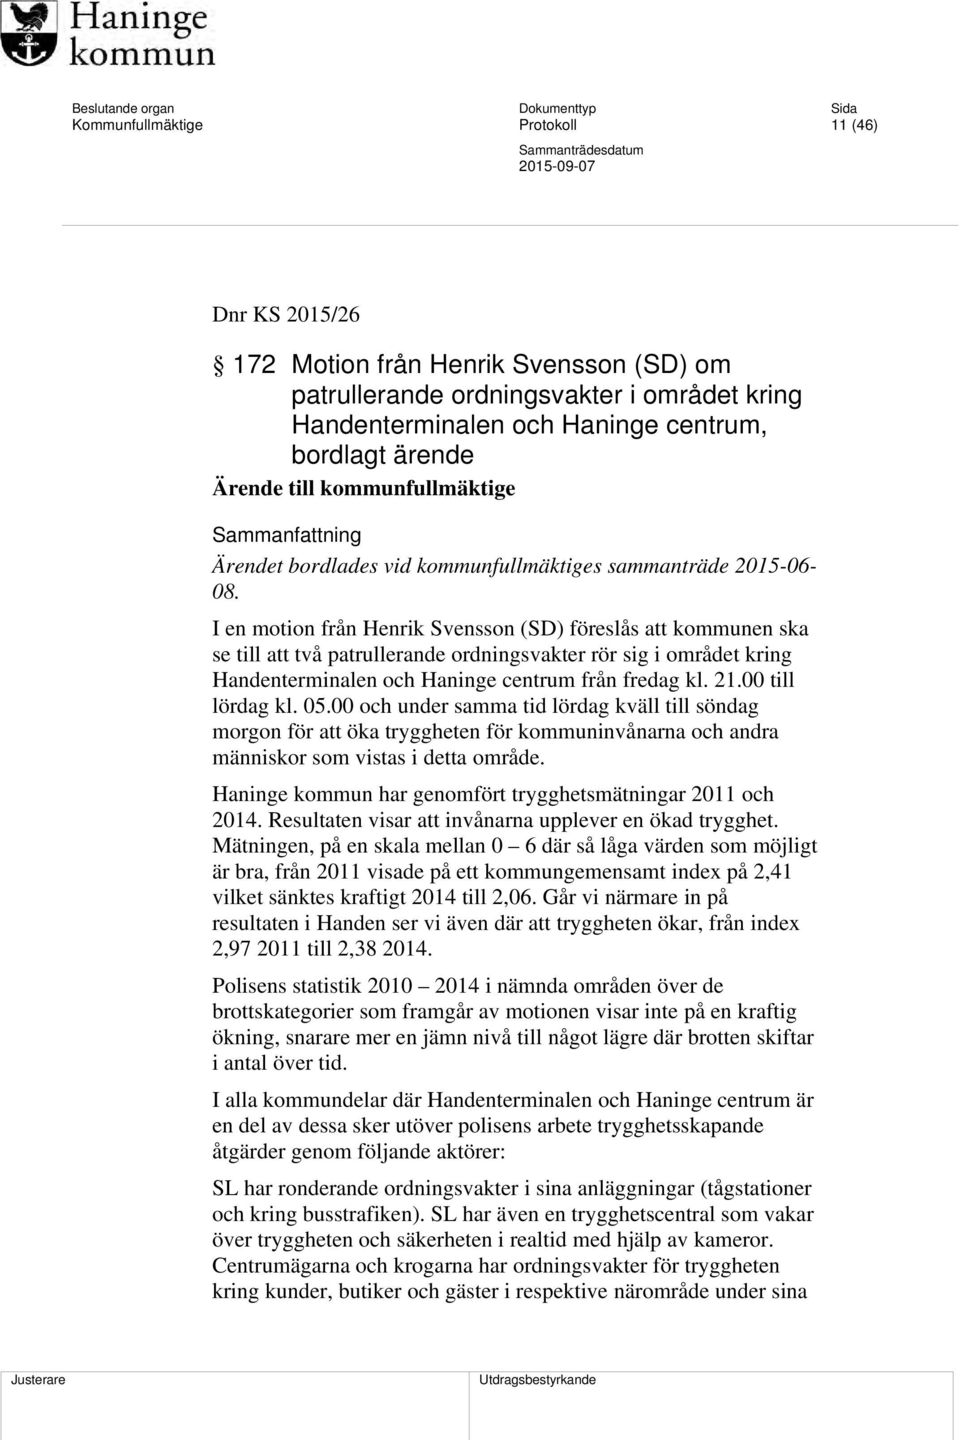 I en motion från Henrik Svensson (SD) föreslås att kommunen ska se till att två patrullerande ordningsvakter rör sig i området kring Handenterminalen och Haninge centrum från fredag kl. 21.